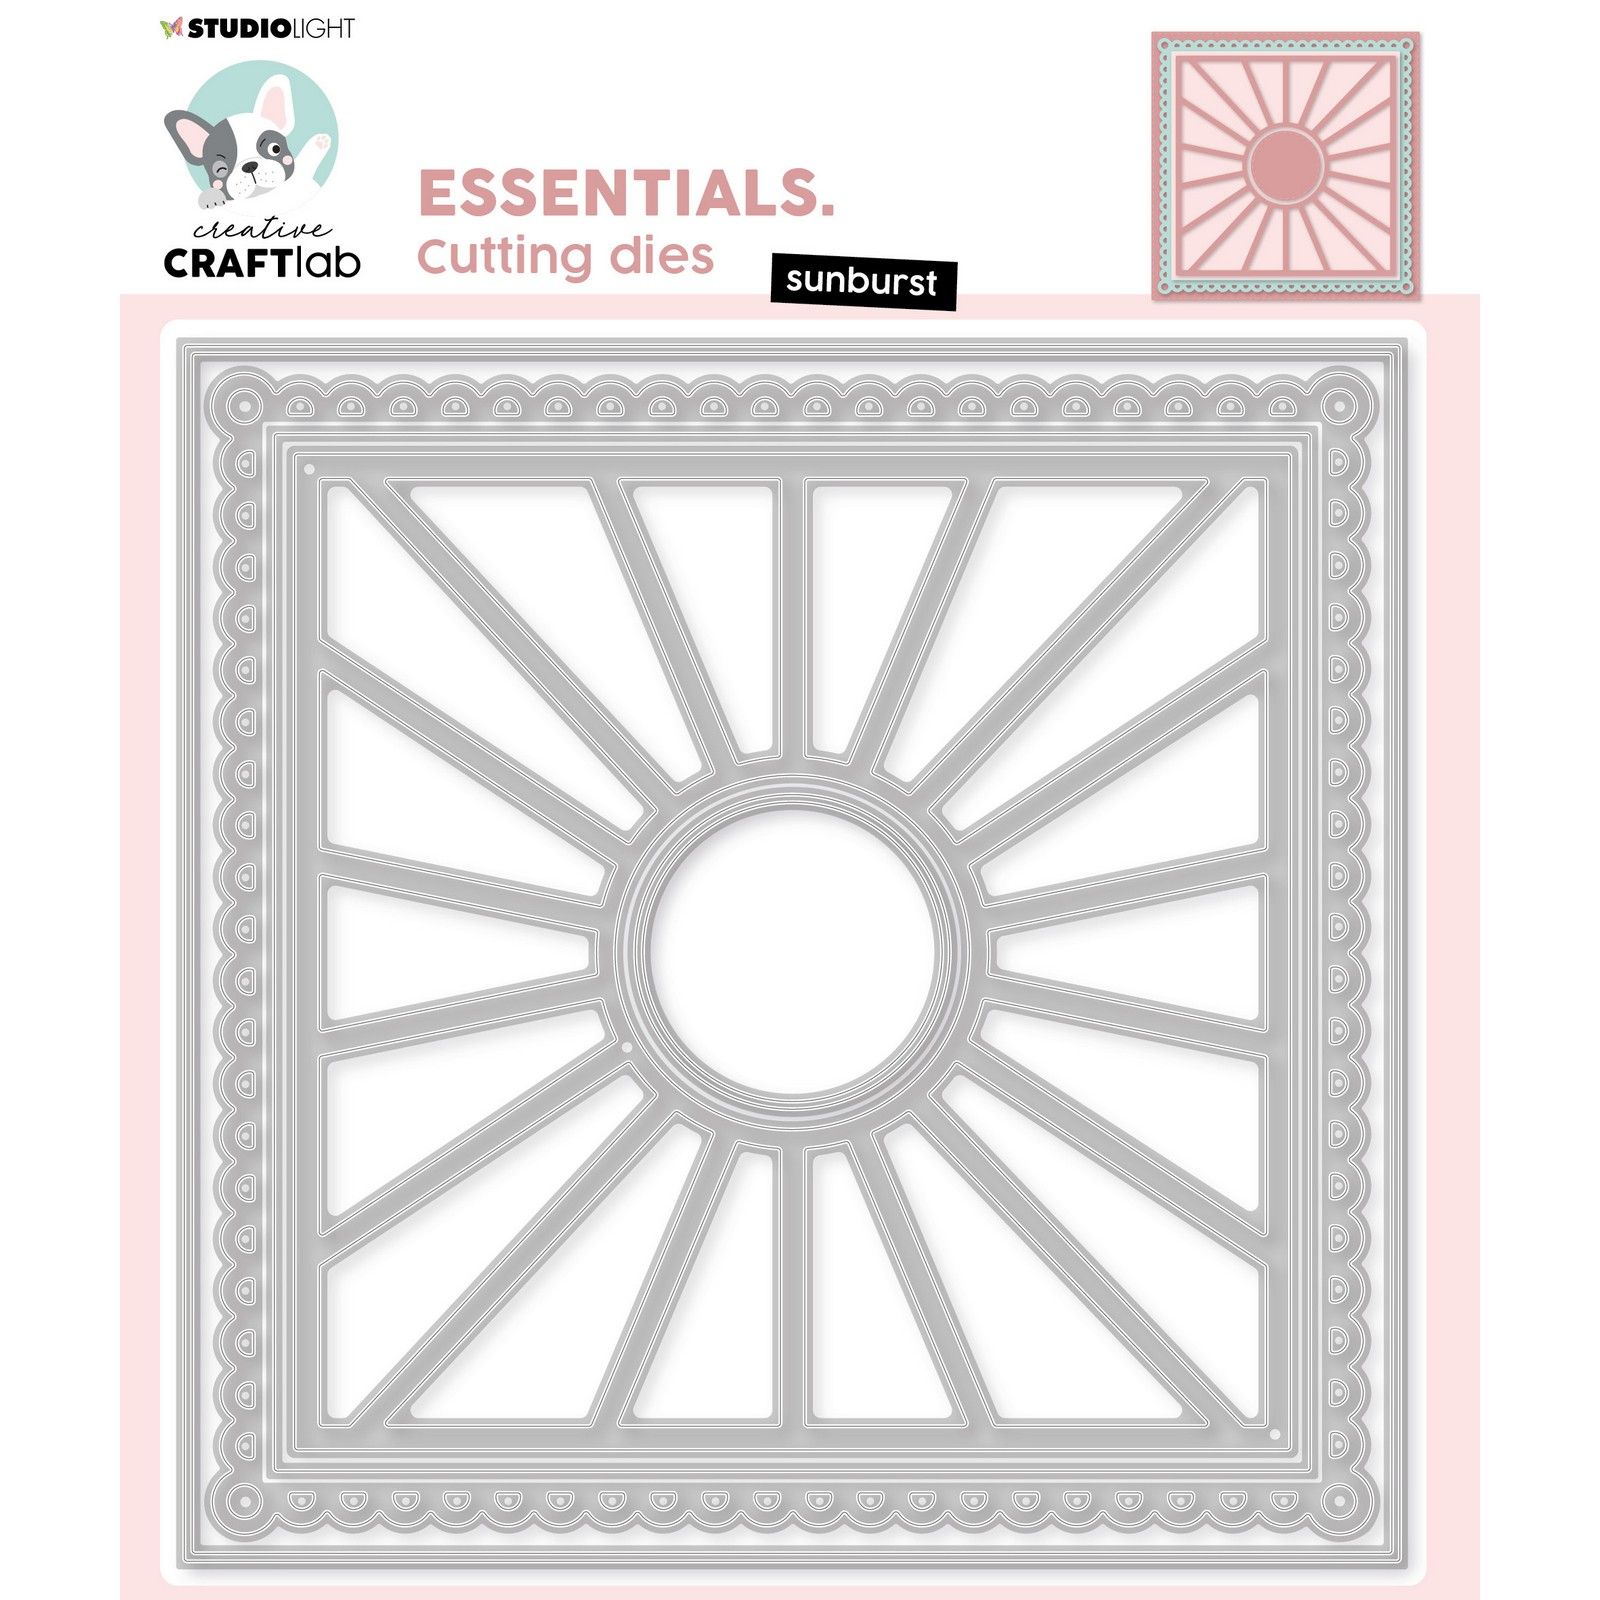 Creative Craftlab • Essentials Cutting Die Sunburst